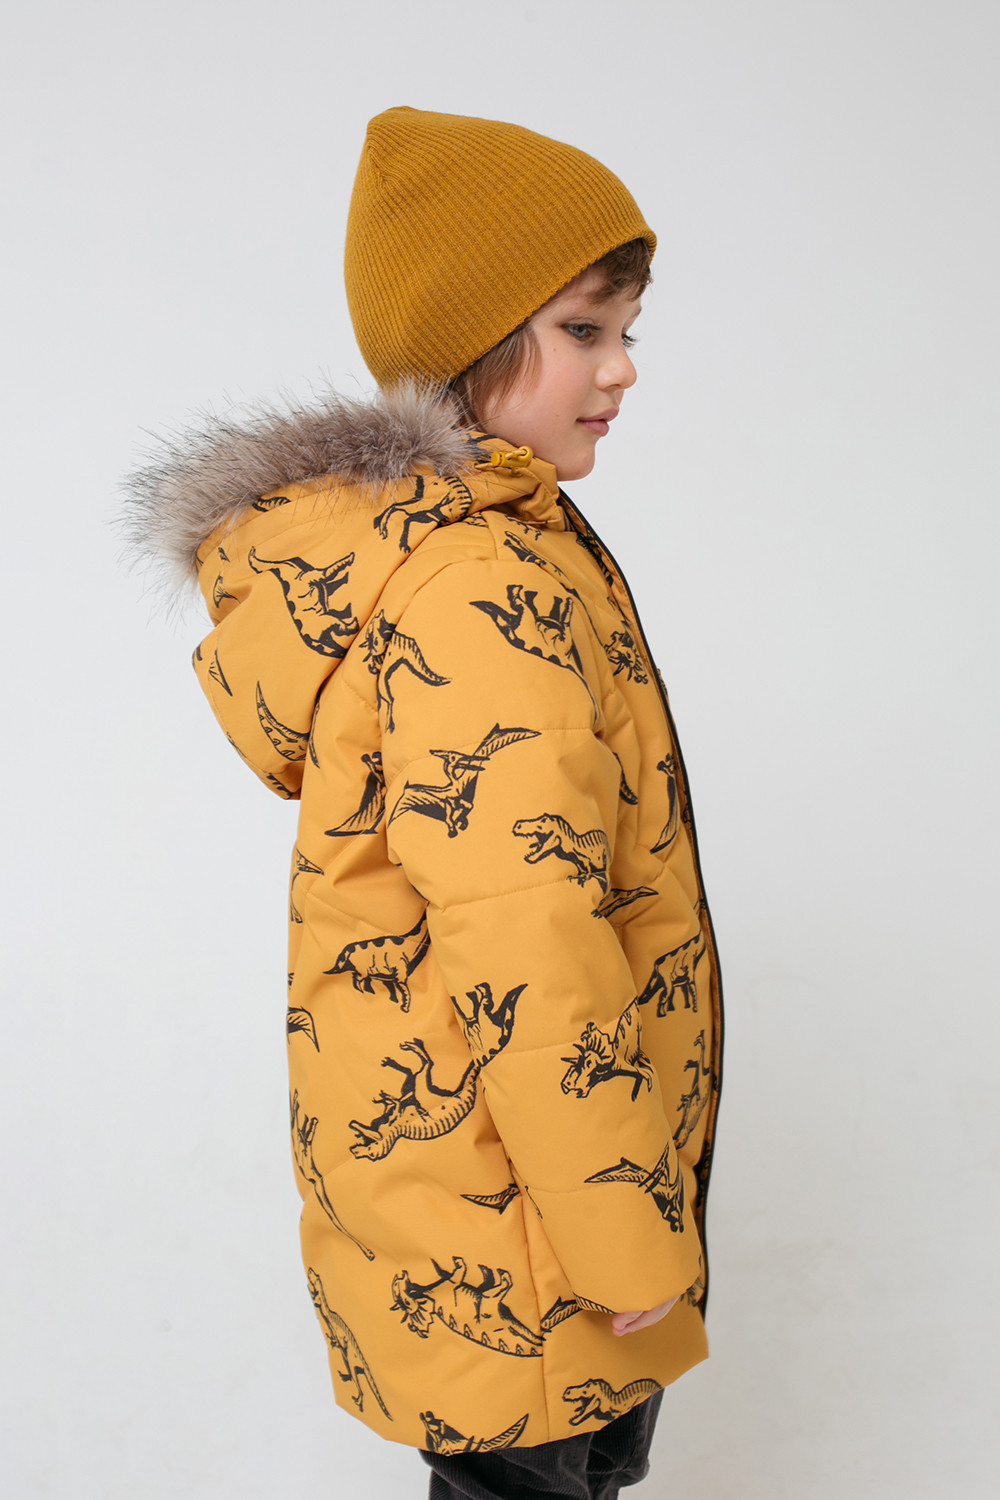 36056/н/1 ВК ГР Куртка для мальчика зима детская купить